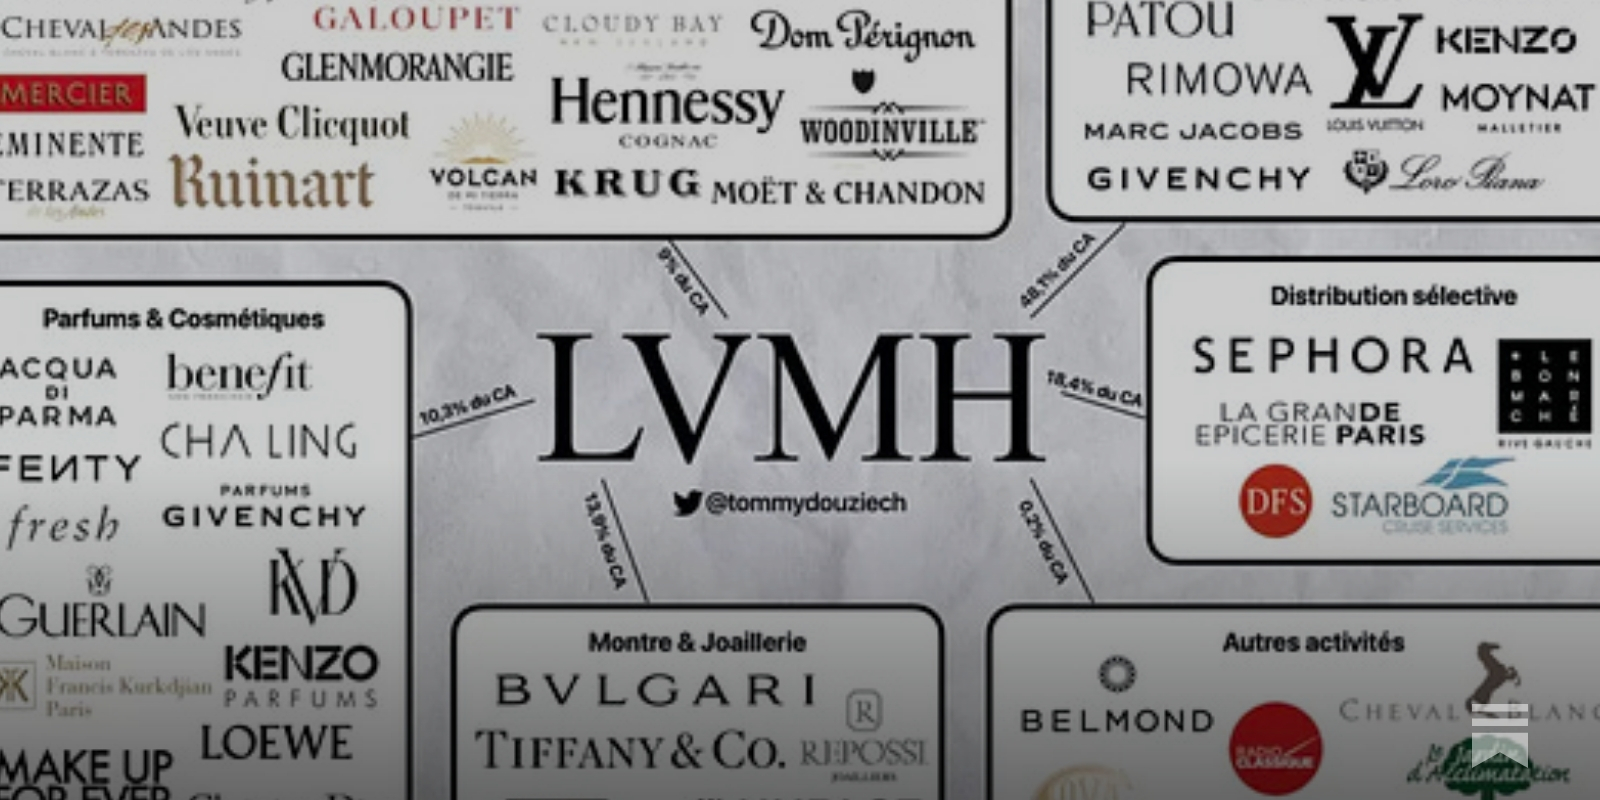 LVMH Could Be An Investor's Dream Stock (OTCMKTS:LVMHF)